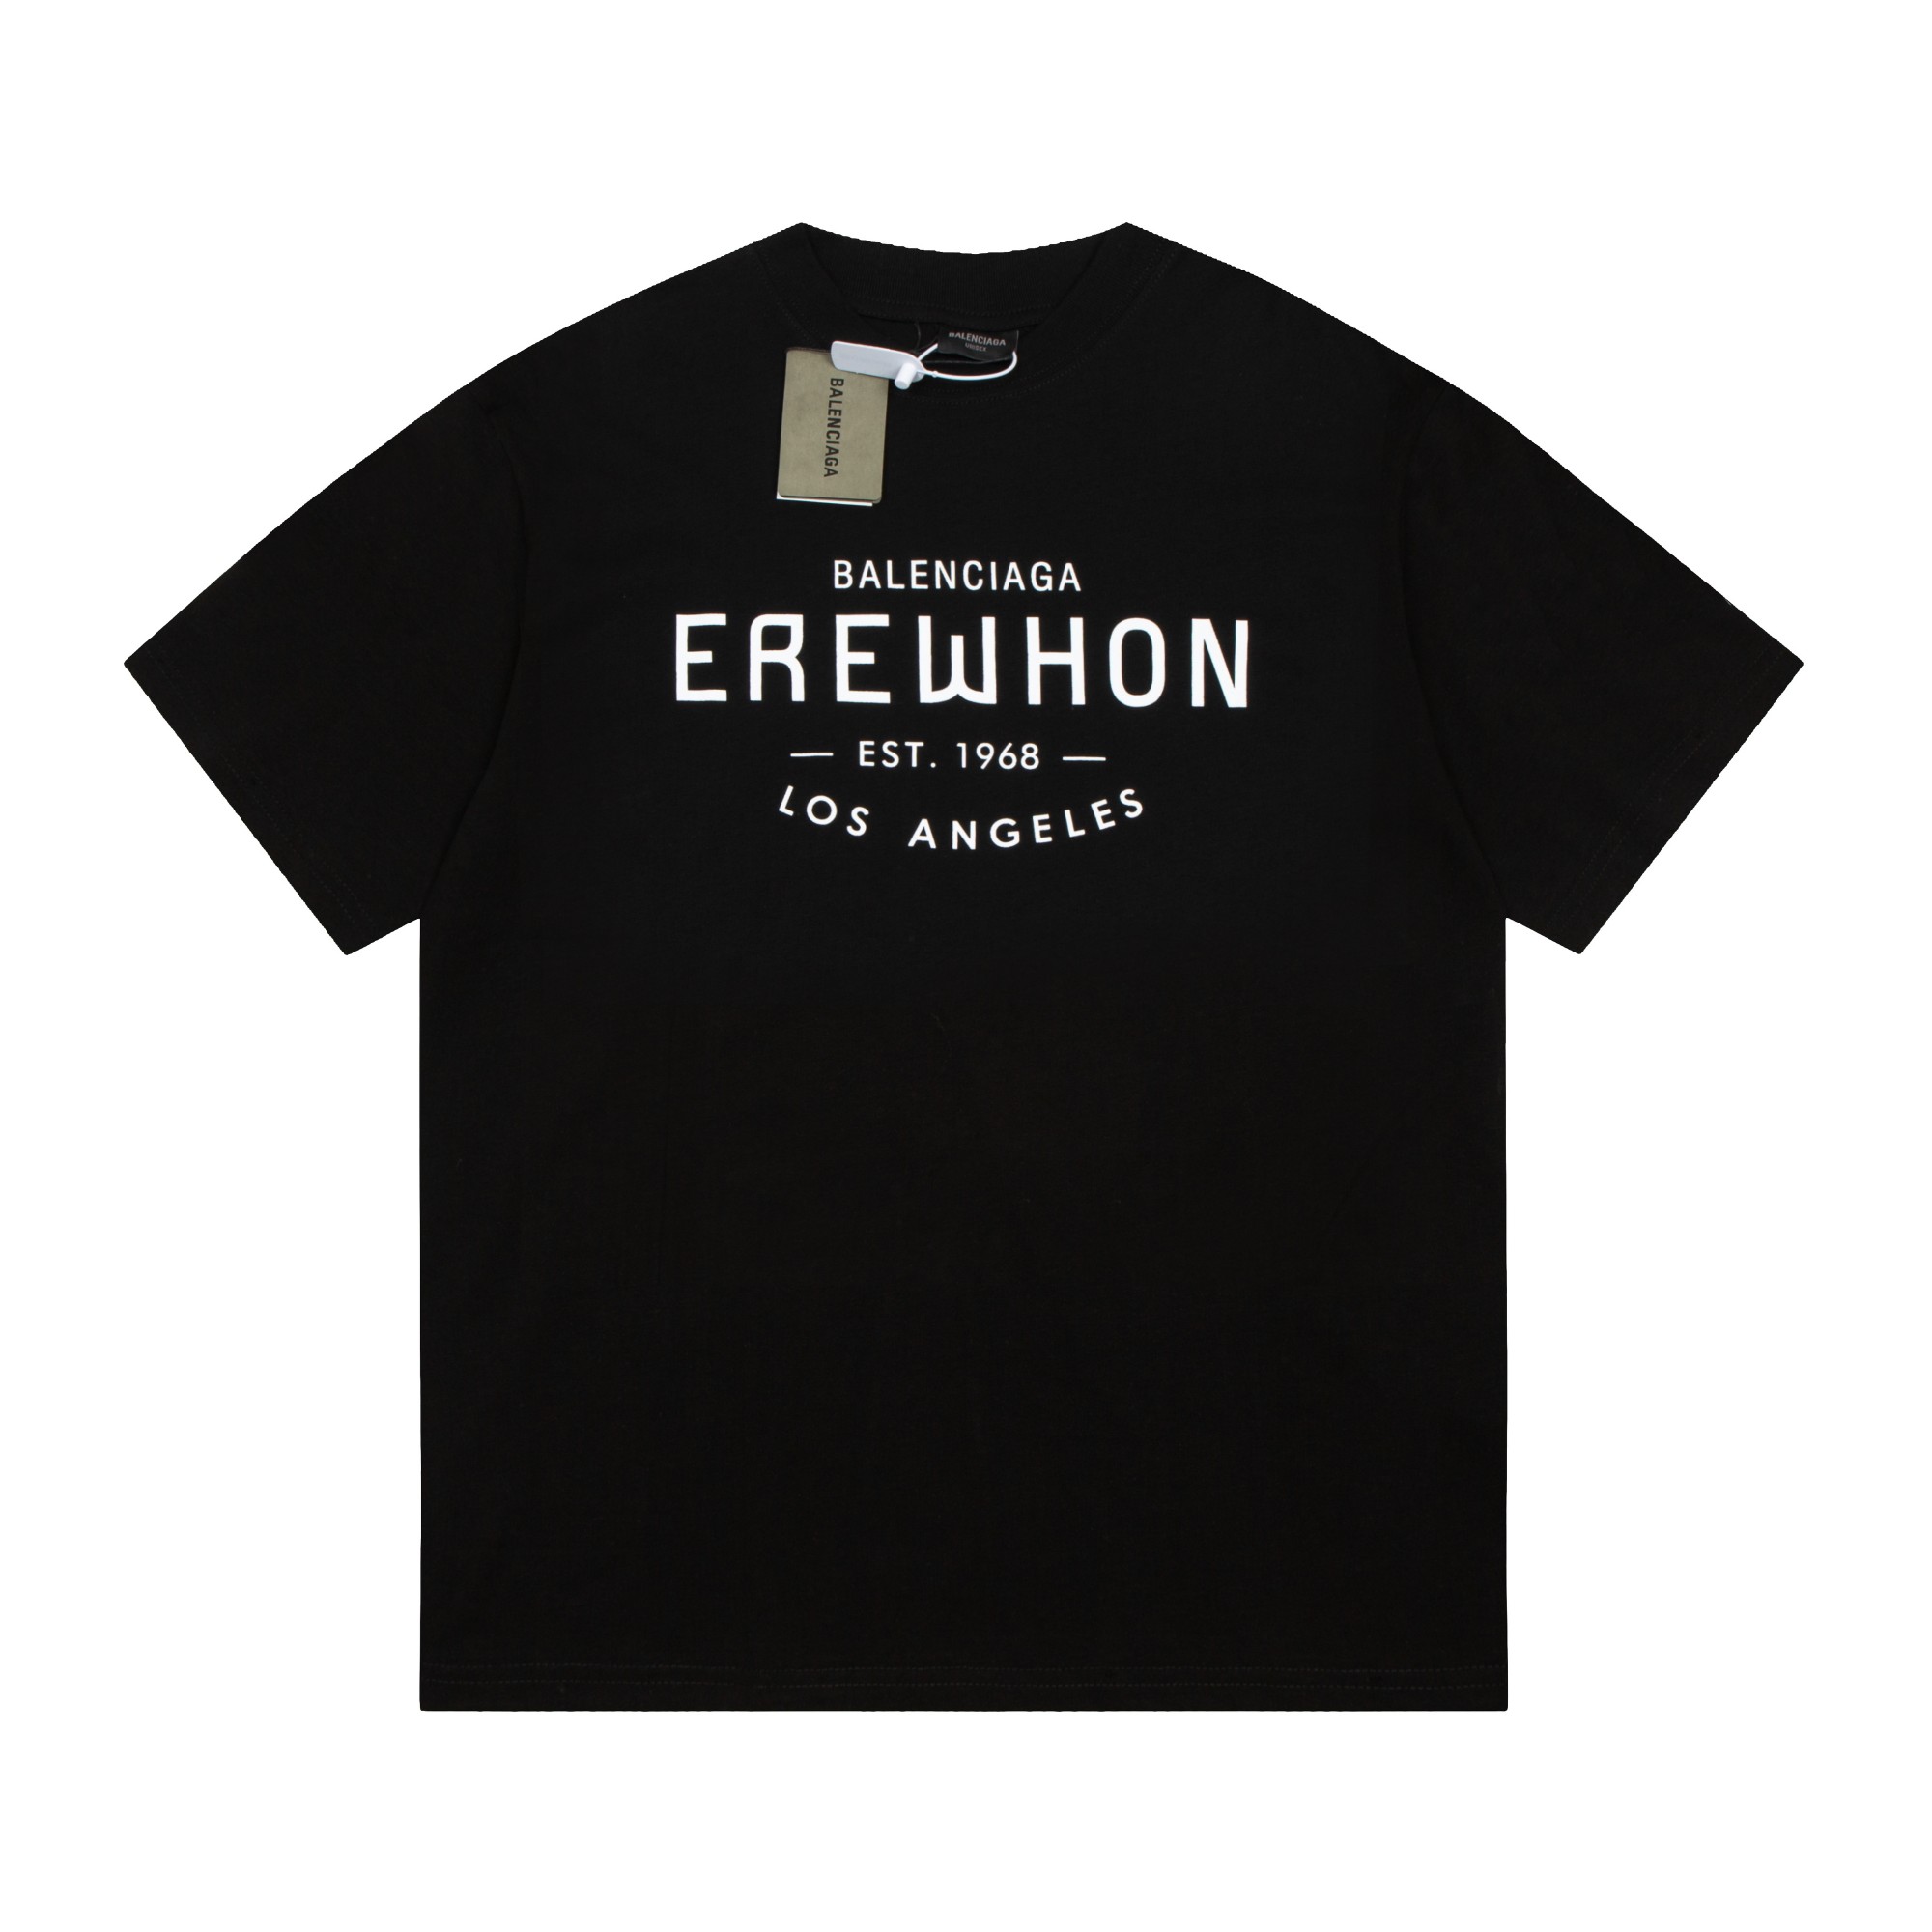 Balenciaga EREWHON joint limited series short sleeves